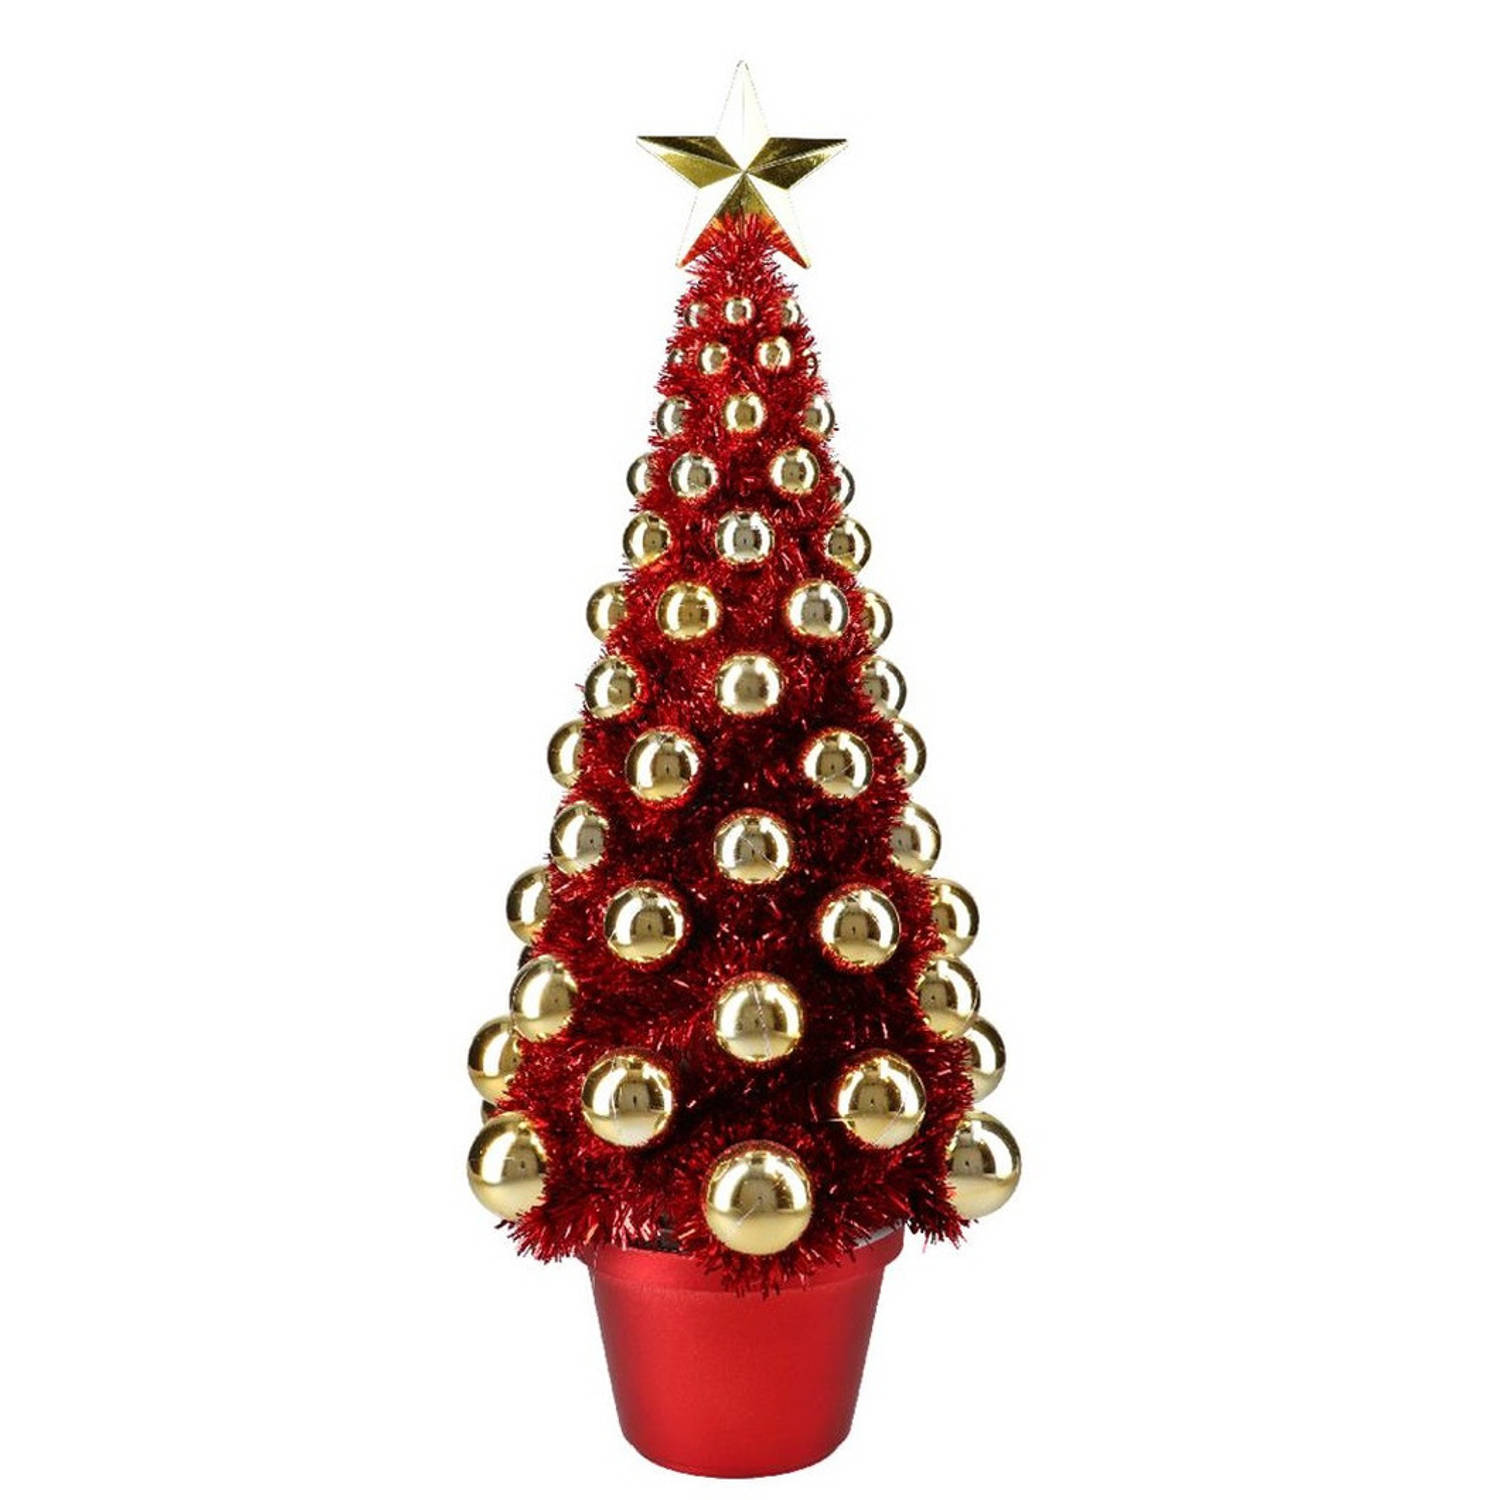 Complete Mini Kunst Kerstboompje-kunstboompje Rood-goud Met Kerstballen 50 Cm Kunstkerstboom